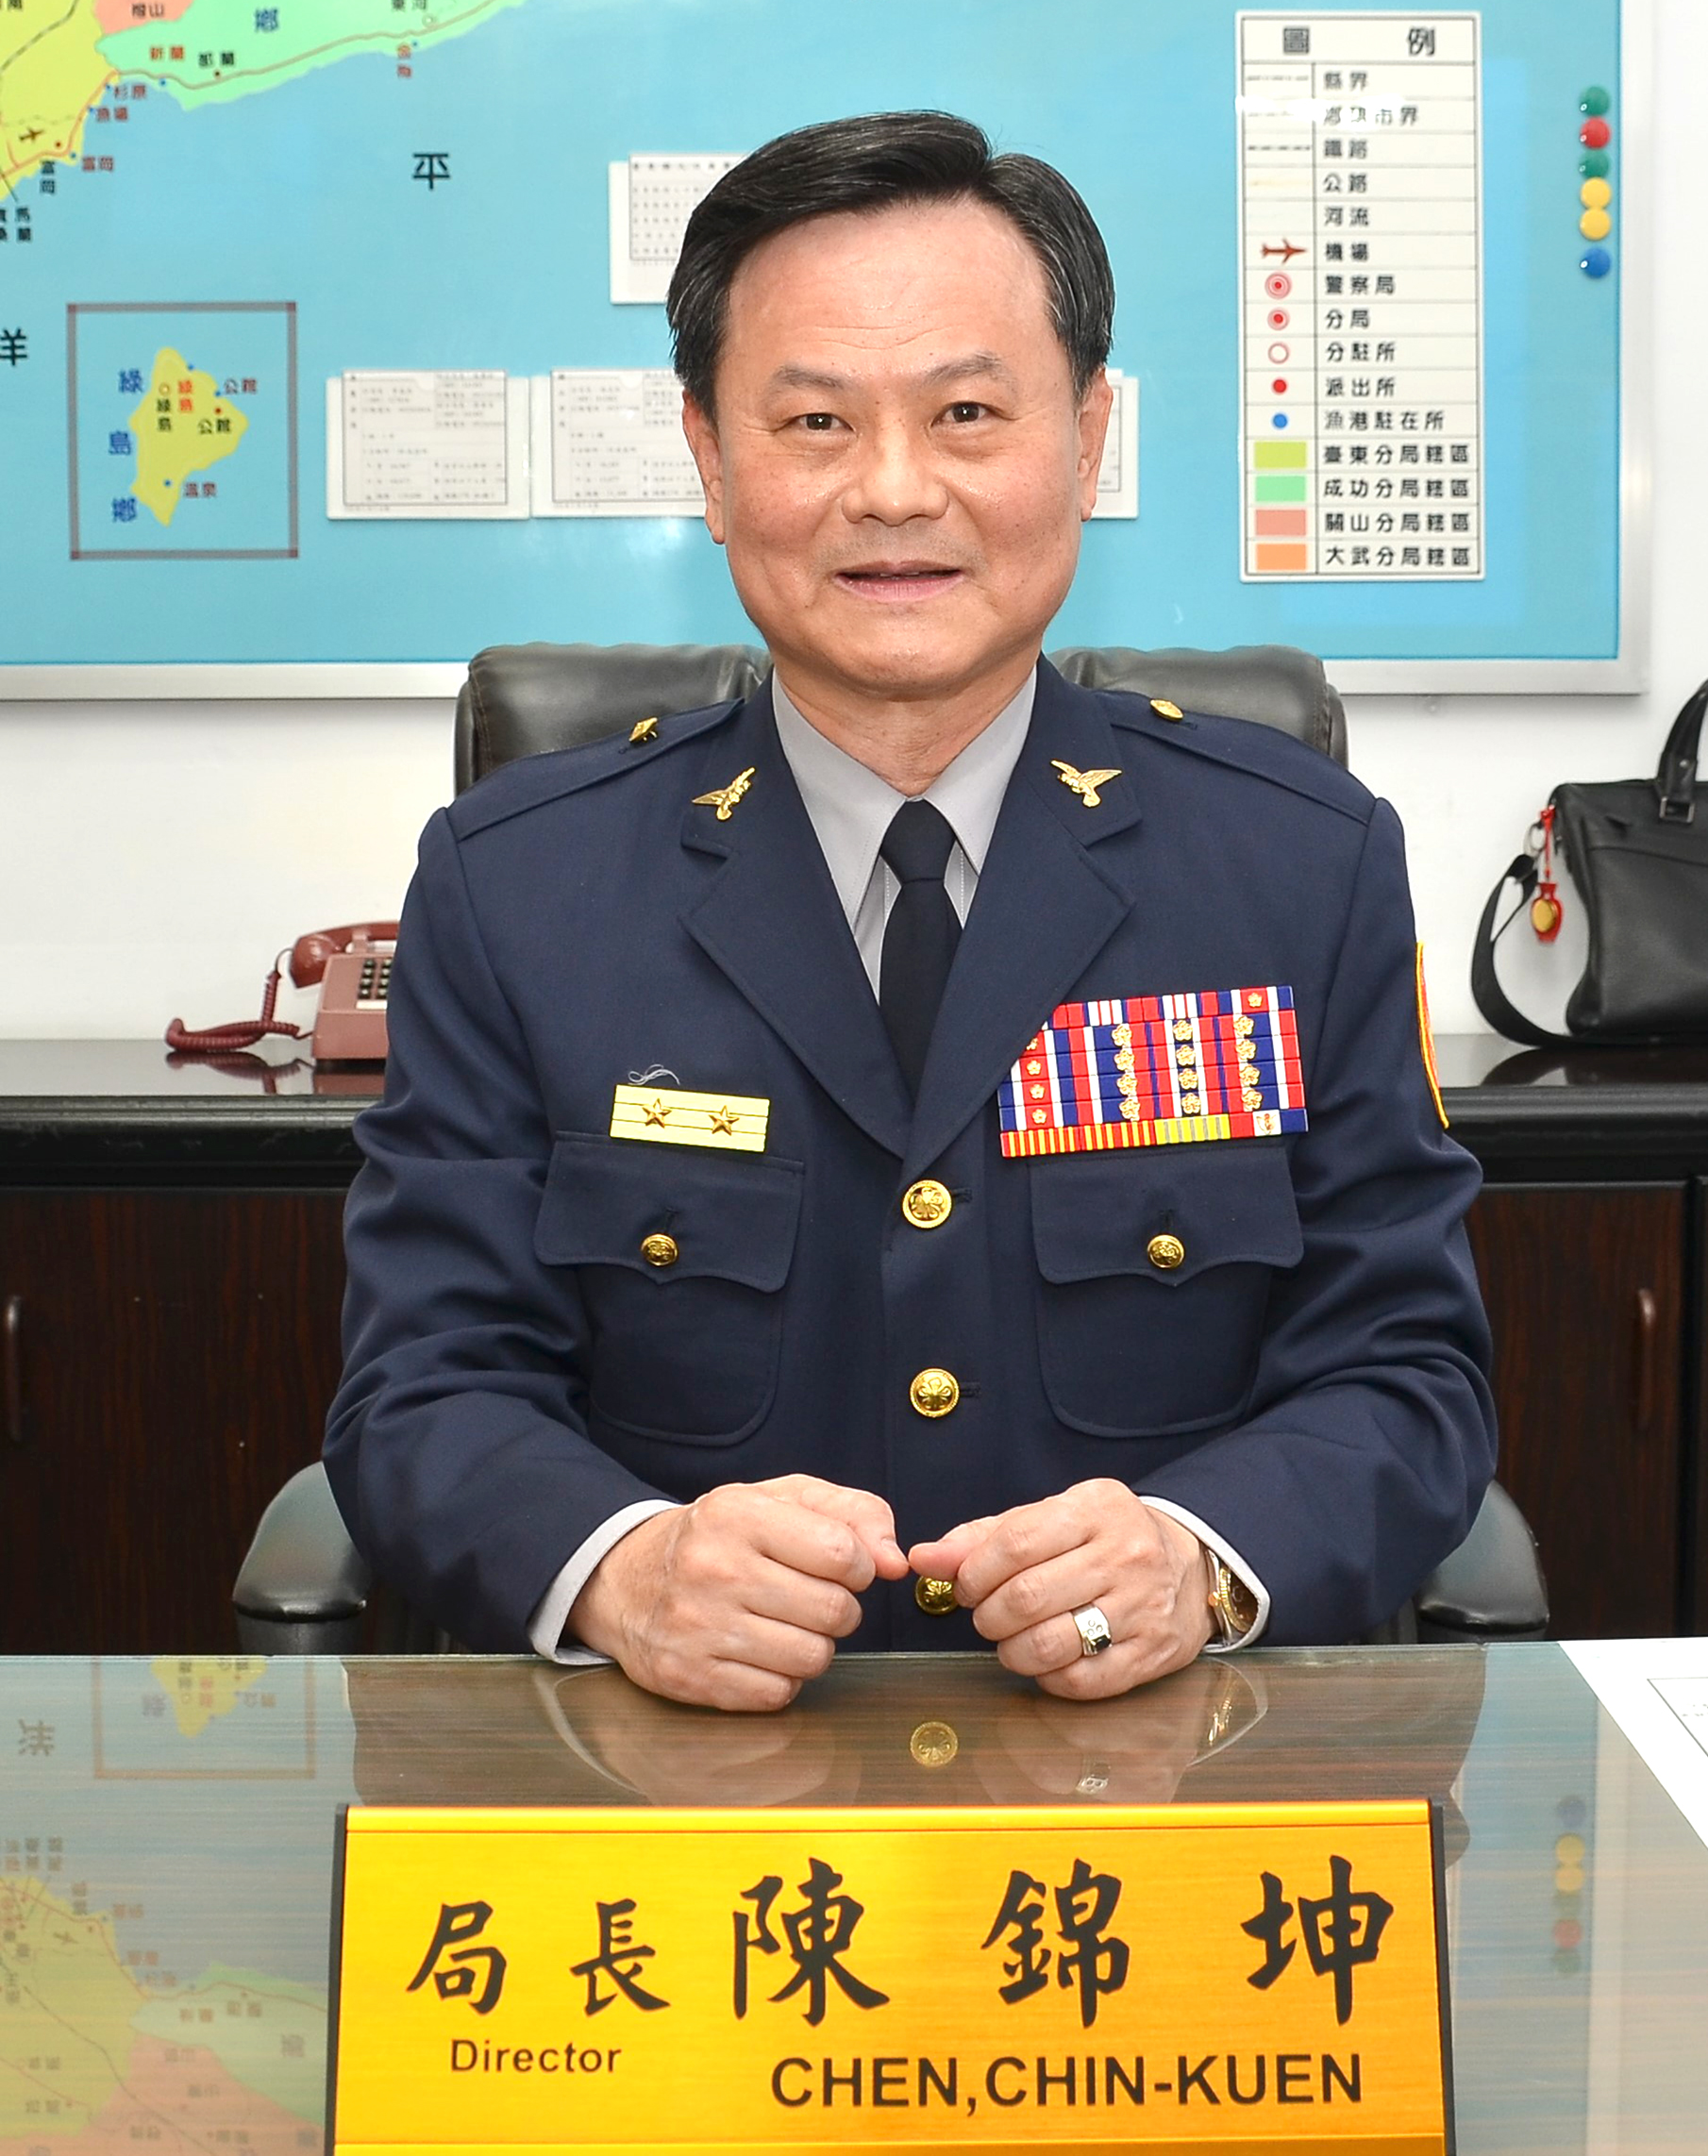 Commissioner Chen Chin Kuen